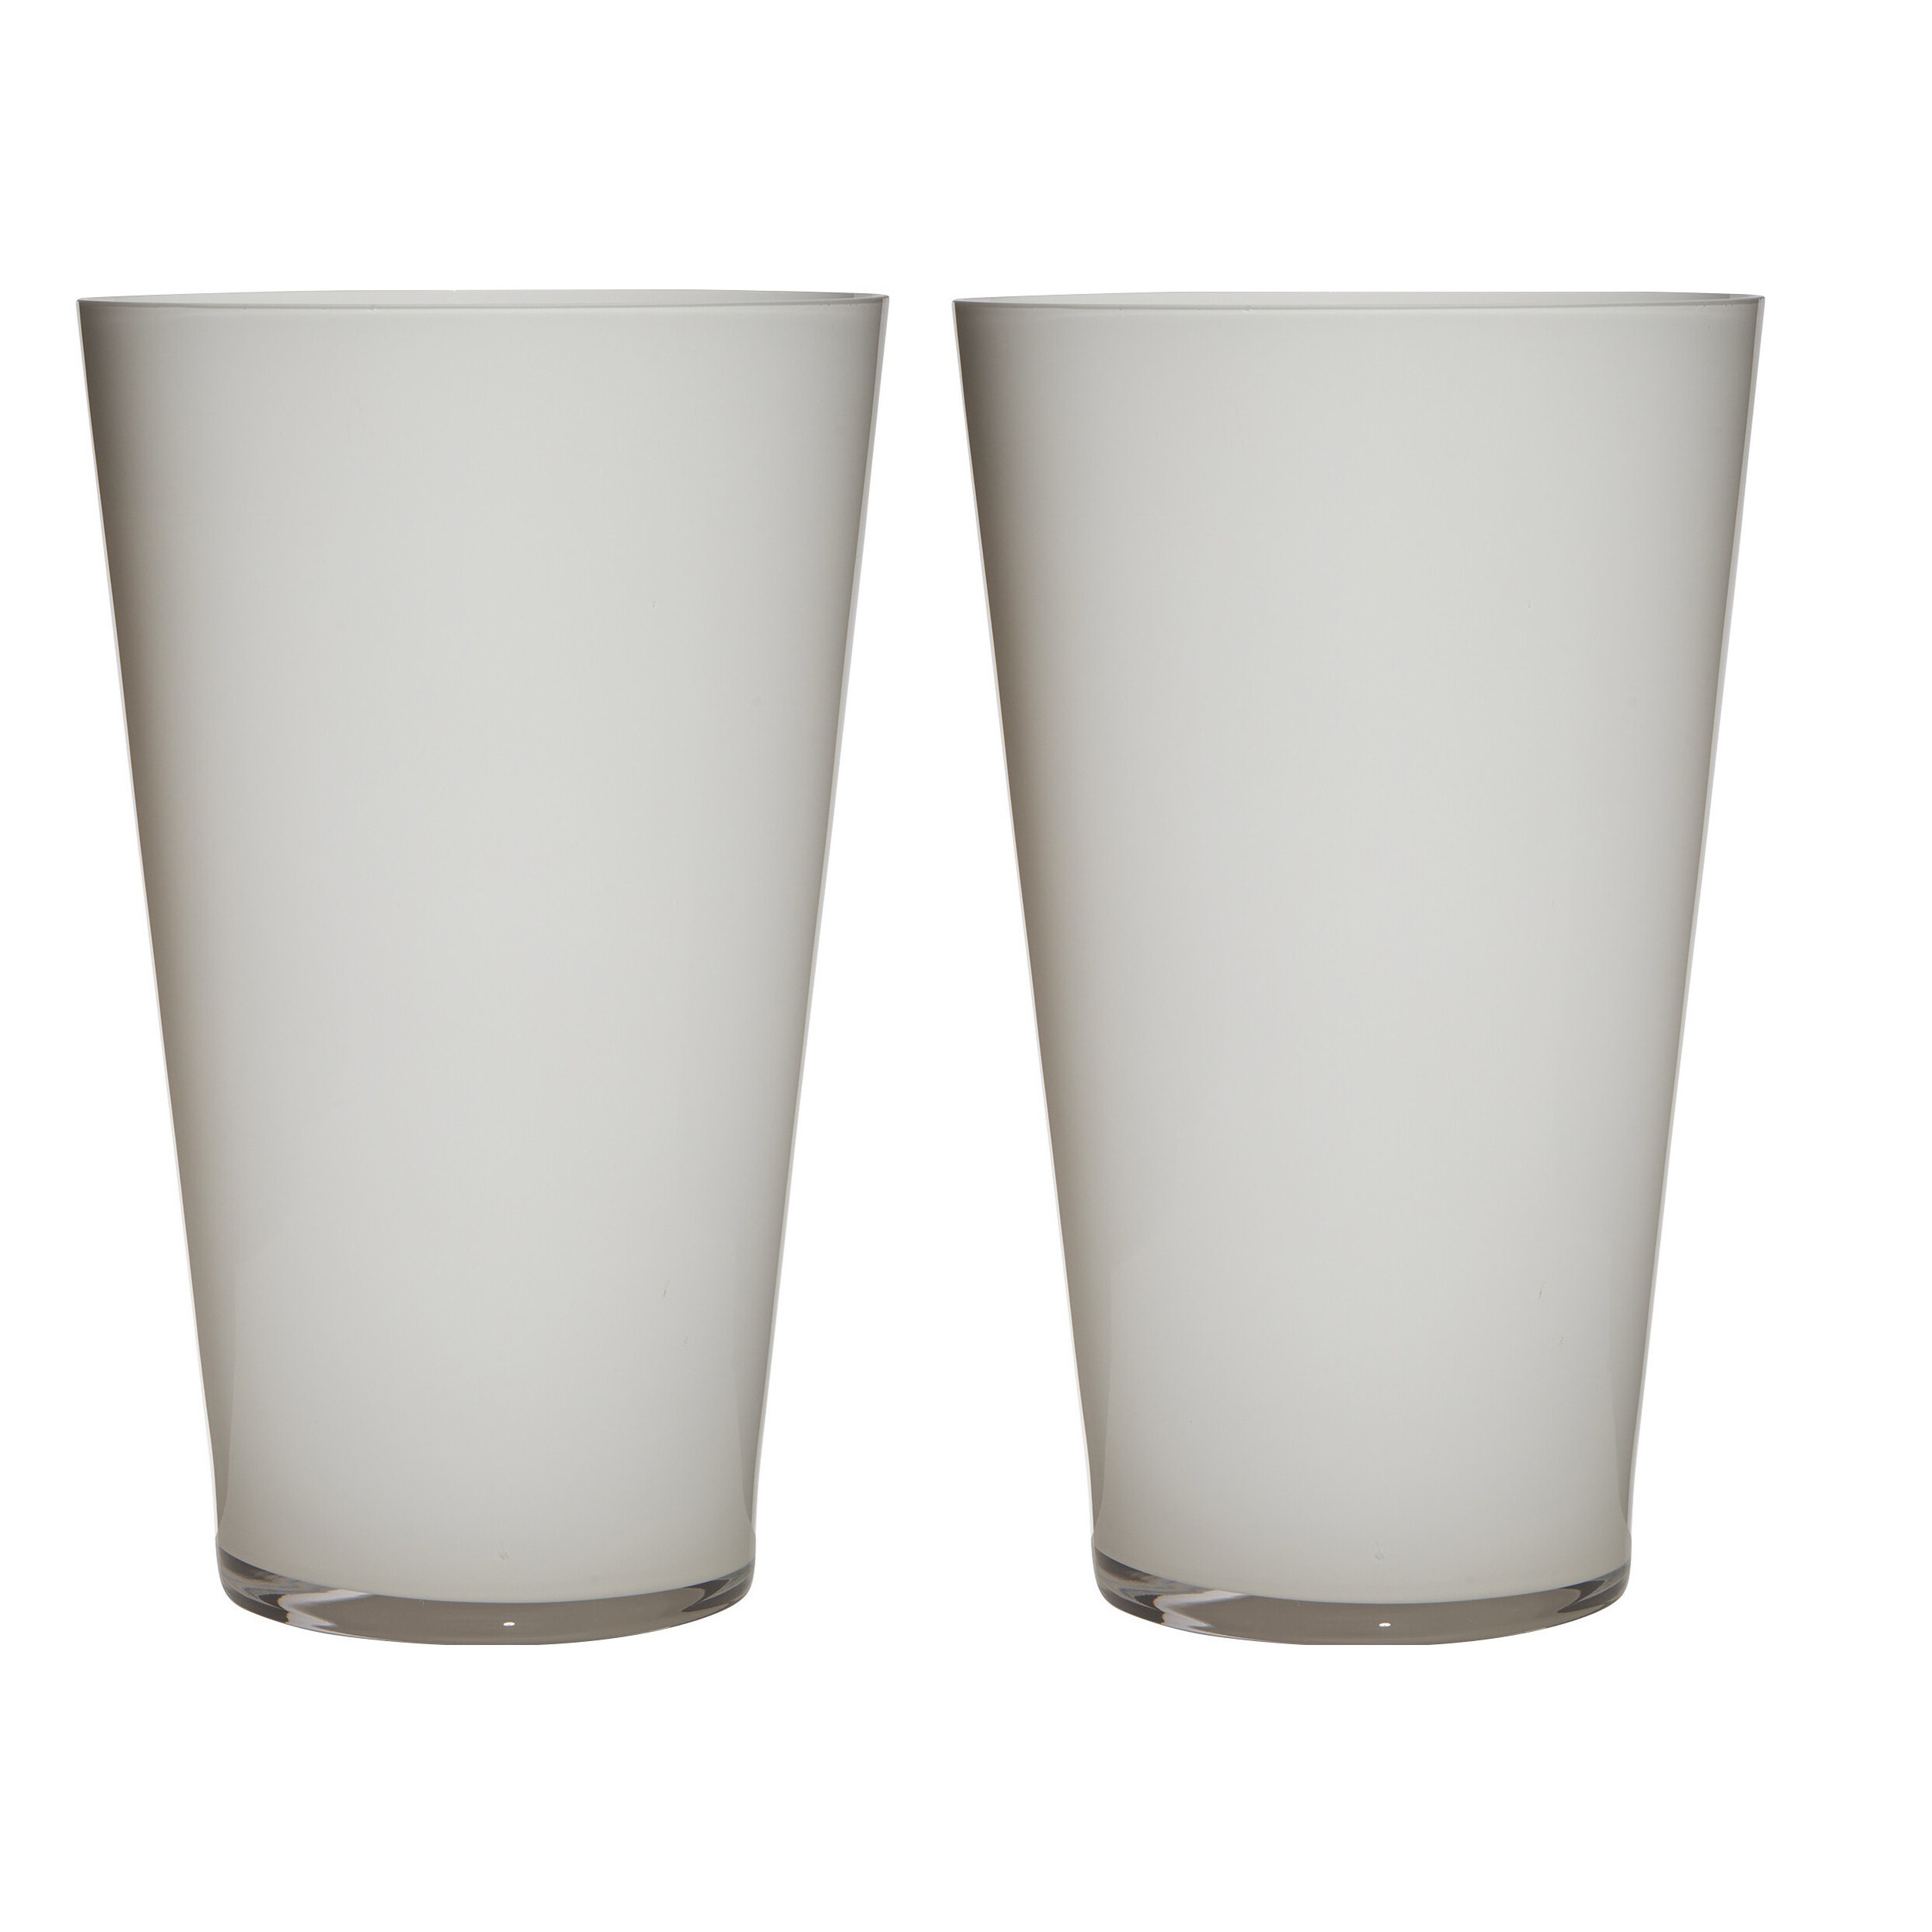 2x stuks luxe stijlvolle witte conische bloemen vaas-vazen van glas 40 x 25 cm